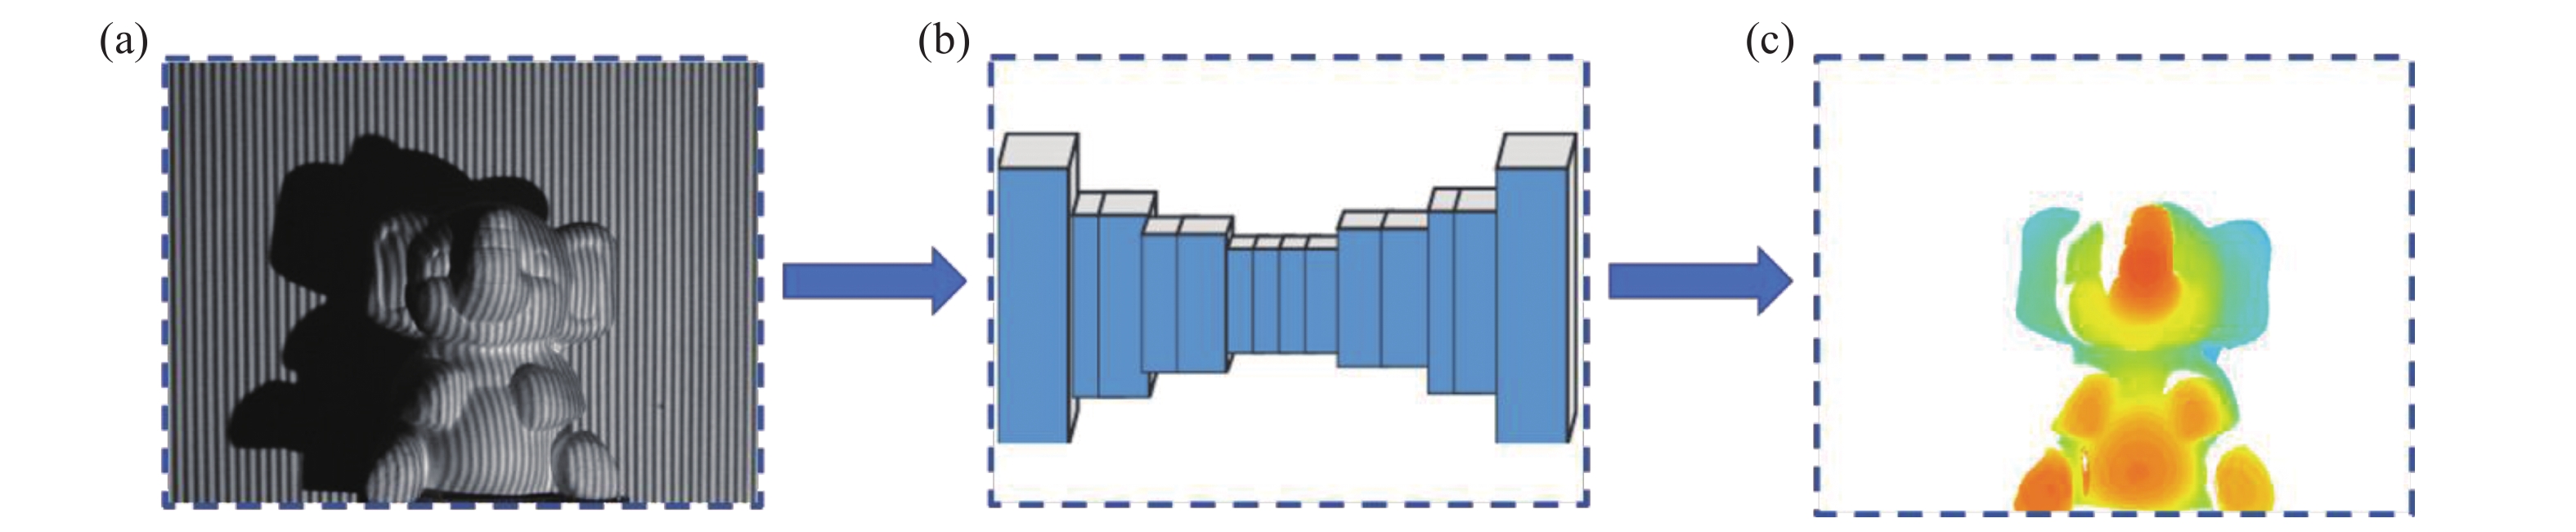 Single-stage deep learning based single-frame fringe projection 3D measurement method. (a)Fringe projection; (b)UNet; (c)Depth